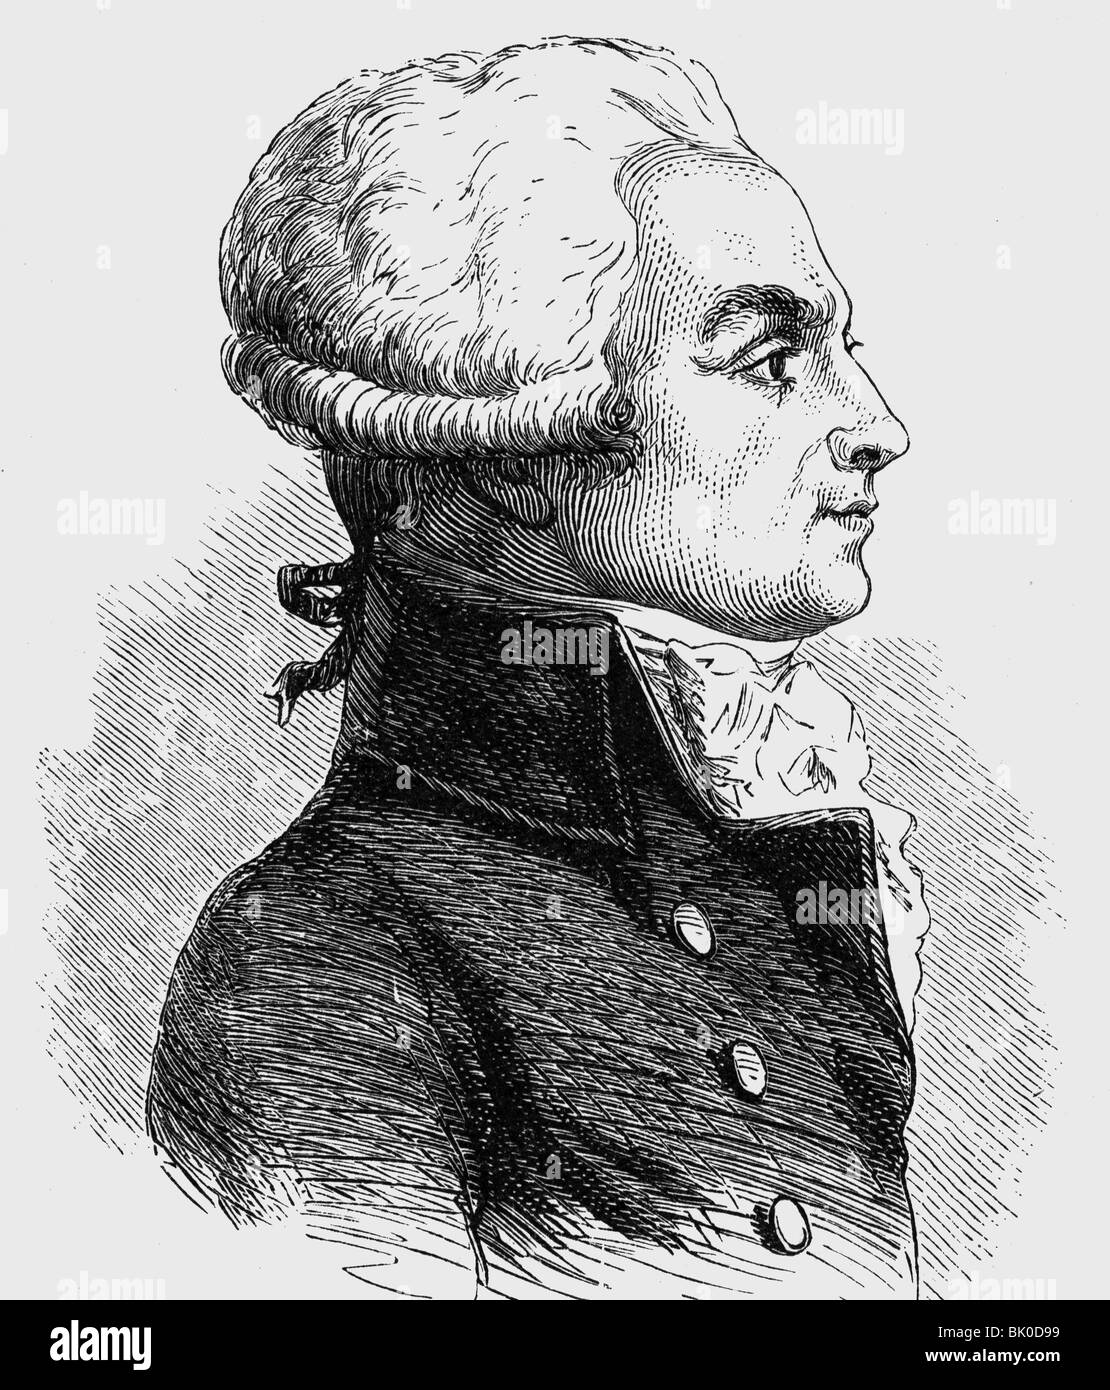 Robespierre, Maximilian de, 6.5.1758 - 28.7.1704, französischer Politiker, Mitglied des Ausschusses für öffentliche Sicherheit 27.7.177 - 27.7.1704, Porträt, Holzgravur, 19. Jahrhundert, Stockfoto